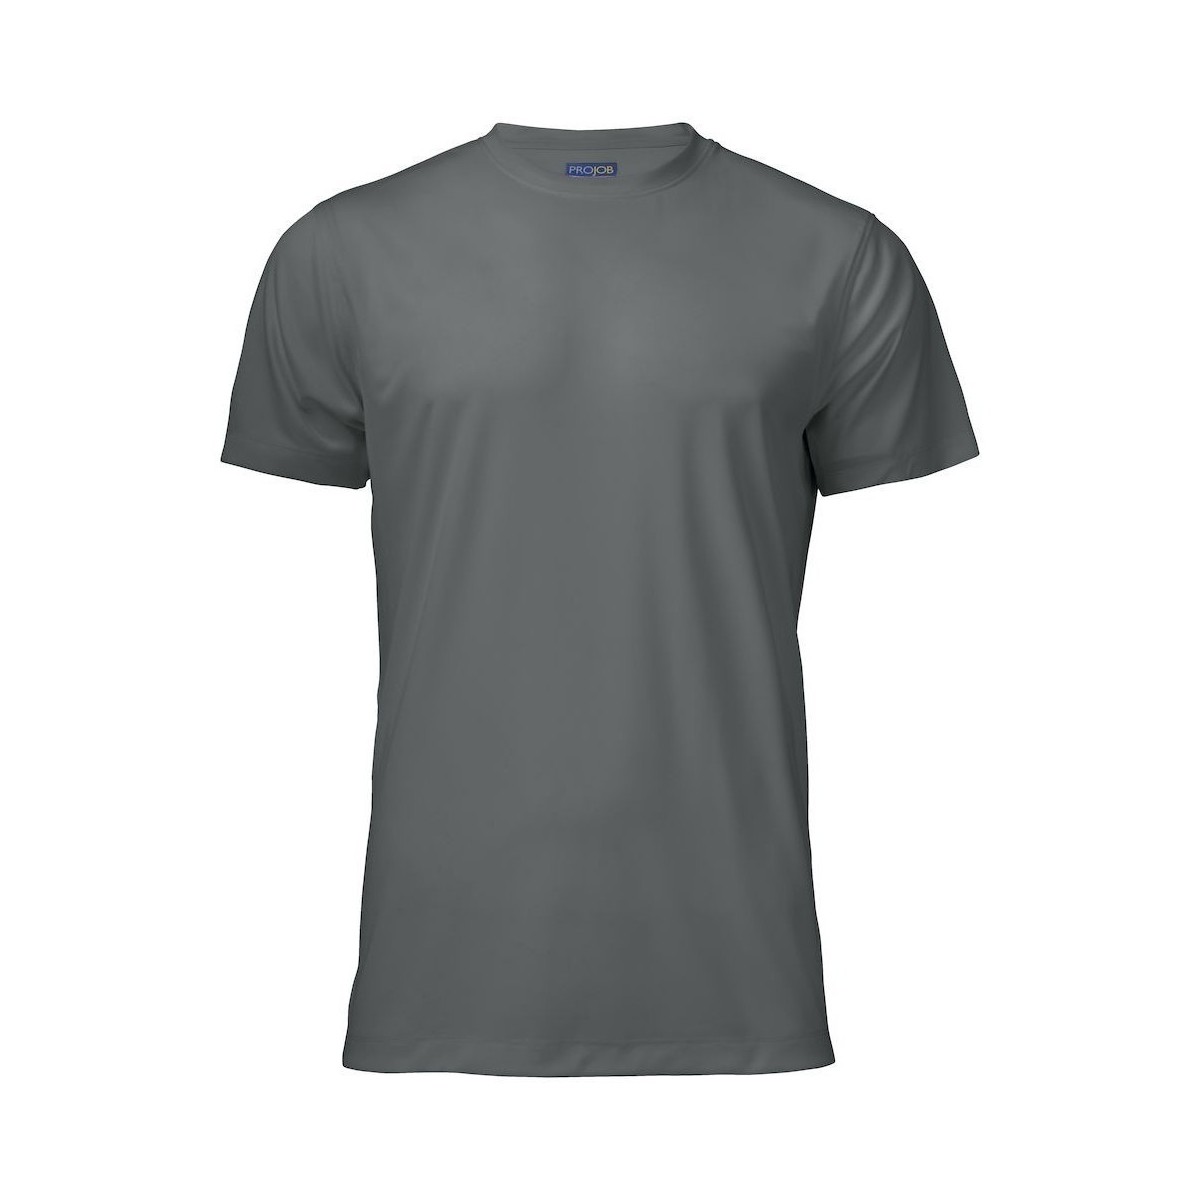 Vêtements Homme T-shirts manches longues Projob UB367 Gris